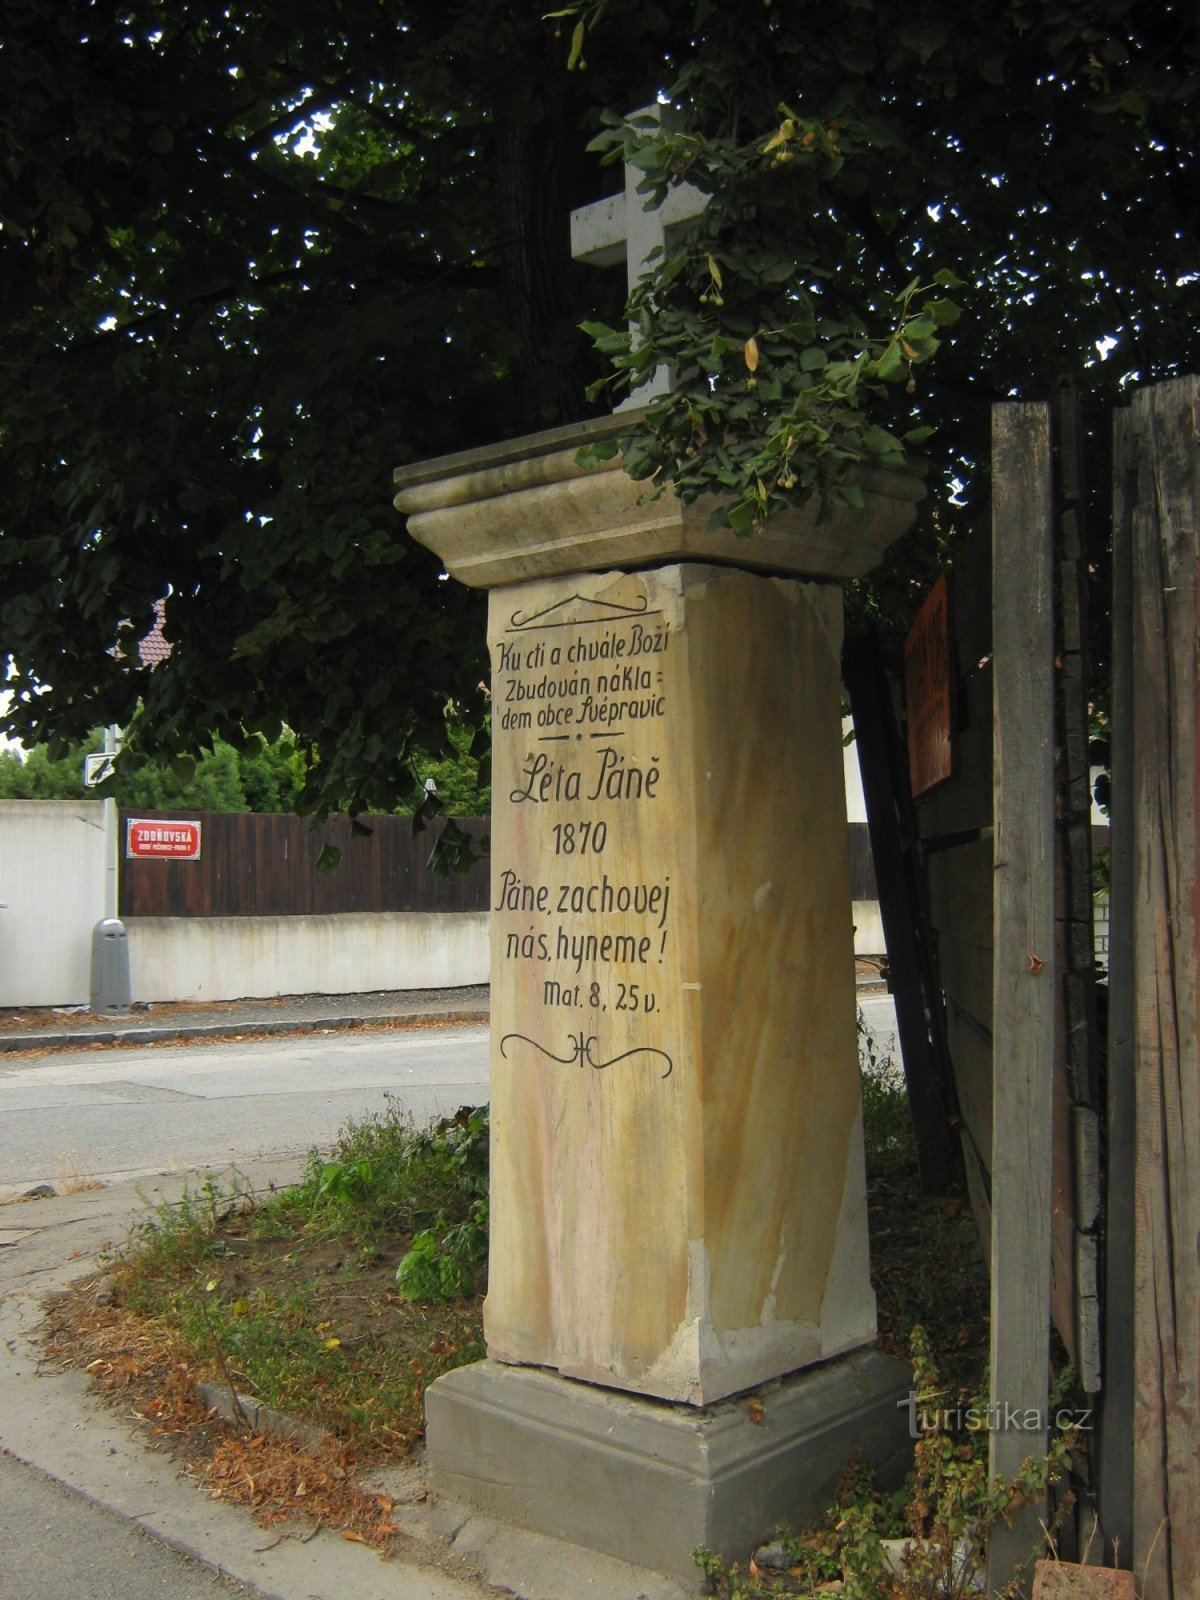 Křížek ở Svépravice